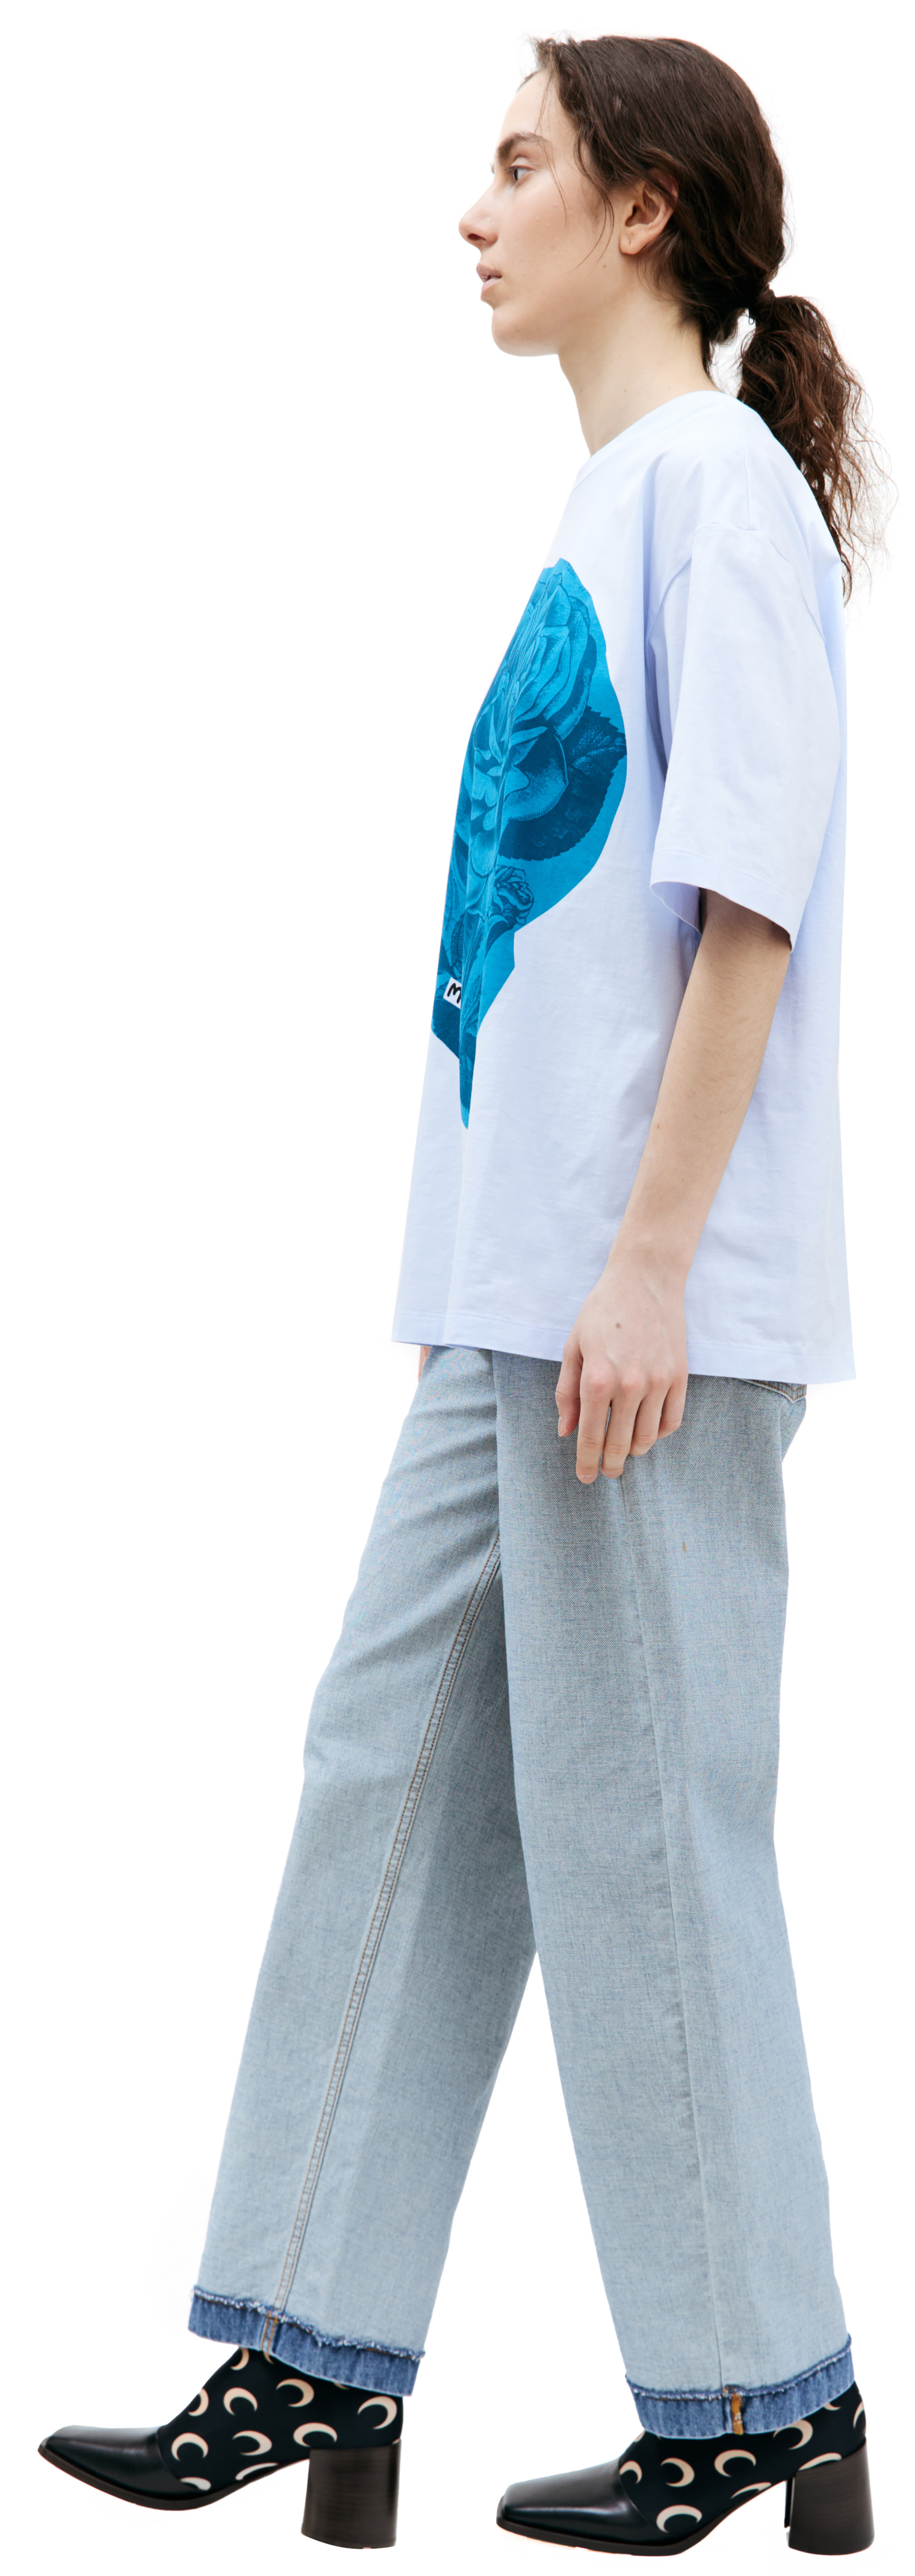 Marni Голубая футболка с принтом